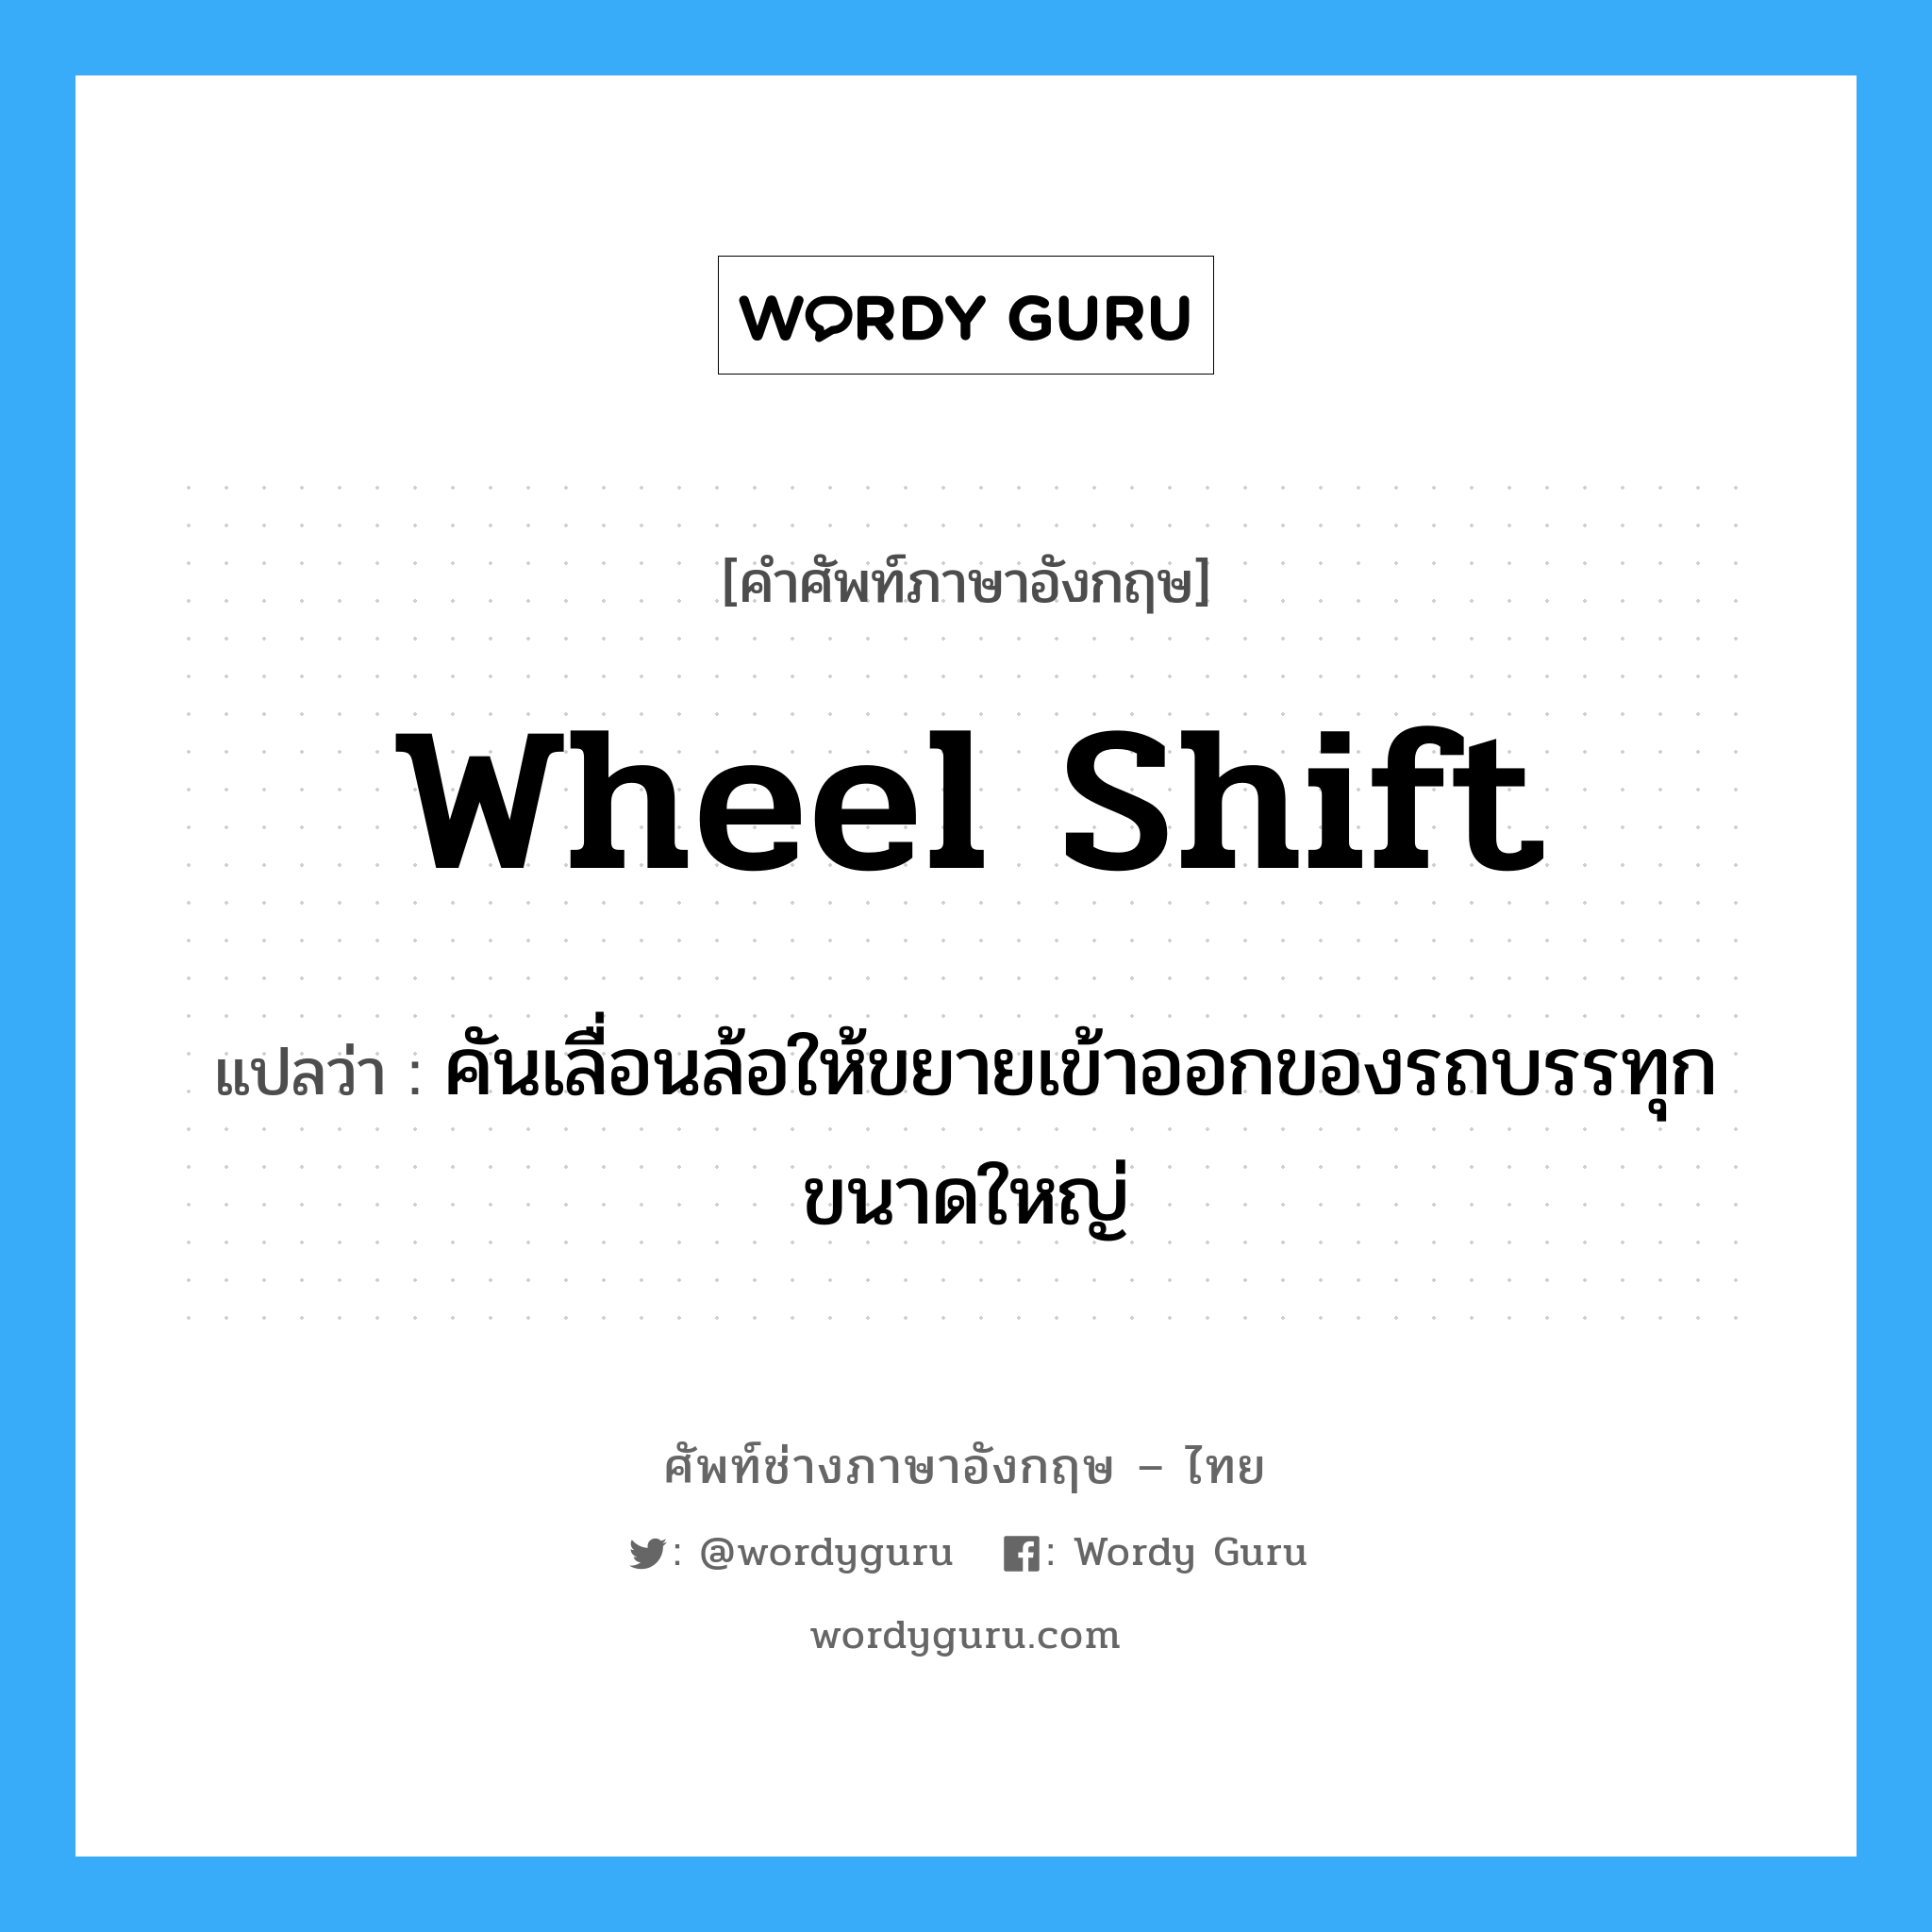 wheel shift แปลว่า?, คำศัพท์ช่างภาษาอังกฤษ - ไทย wheel shift คำศัพท์ภาษาอังกฤษ wheel shift แปลว่า คันเลื่อนล้อให้ขยายเข้าออกของรถบรรทุกขนาดใหญ่